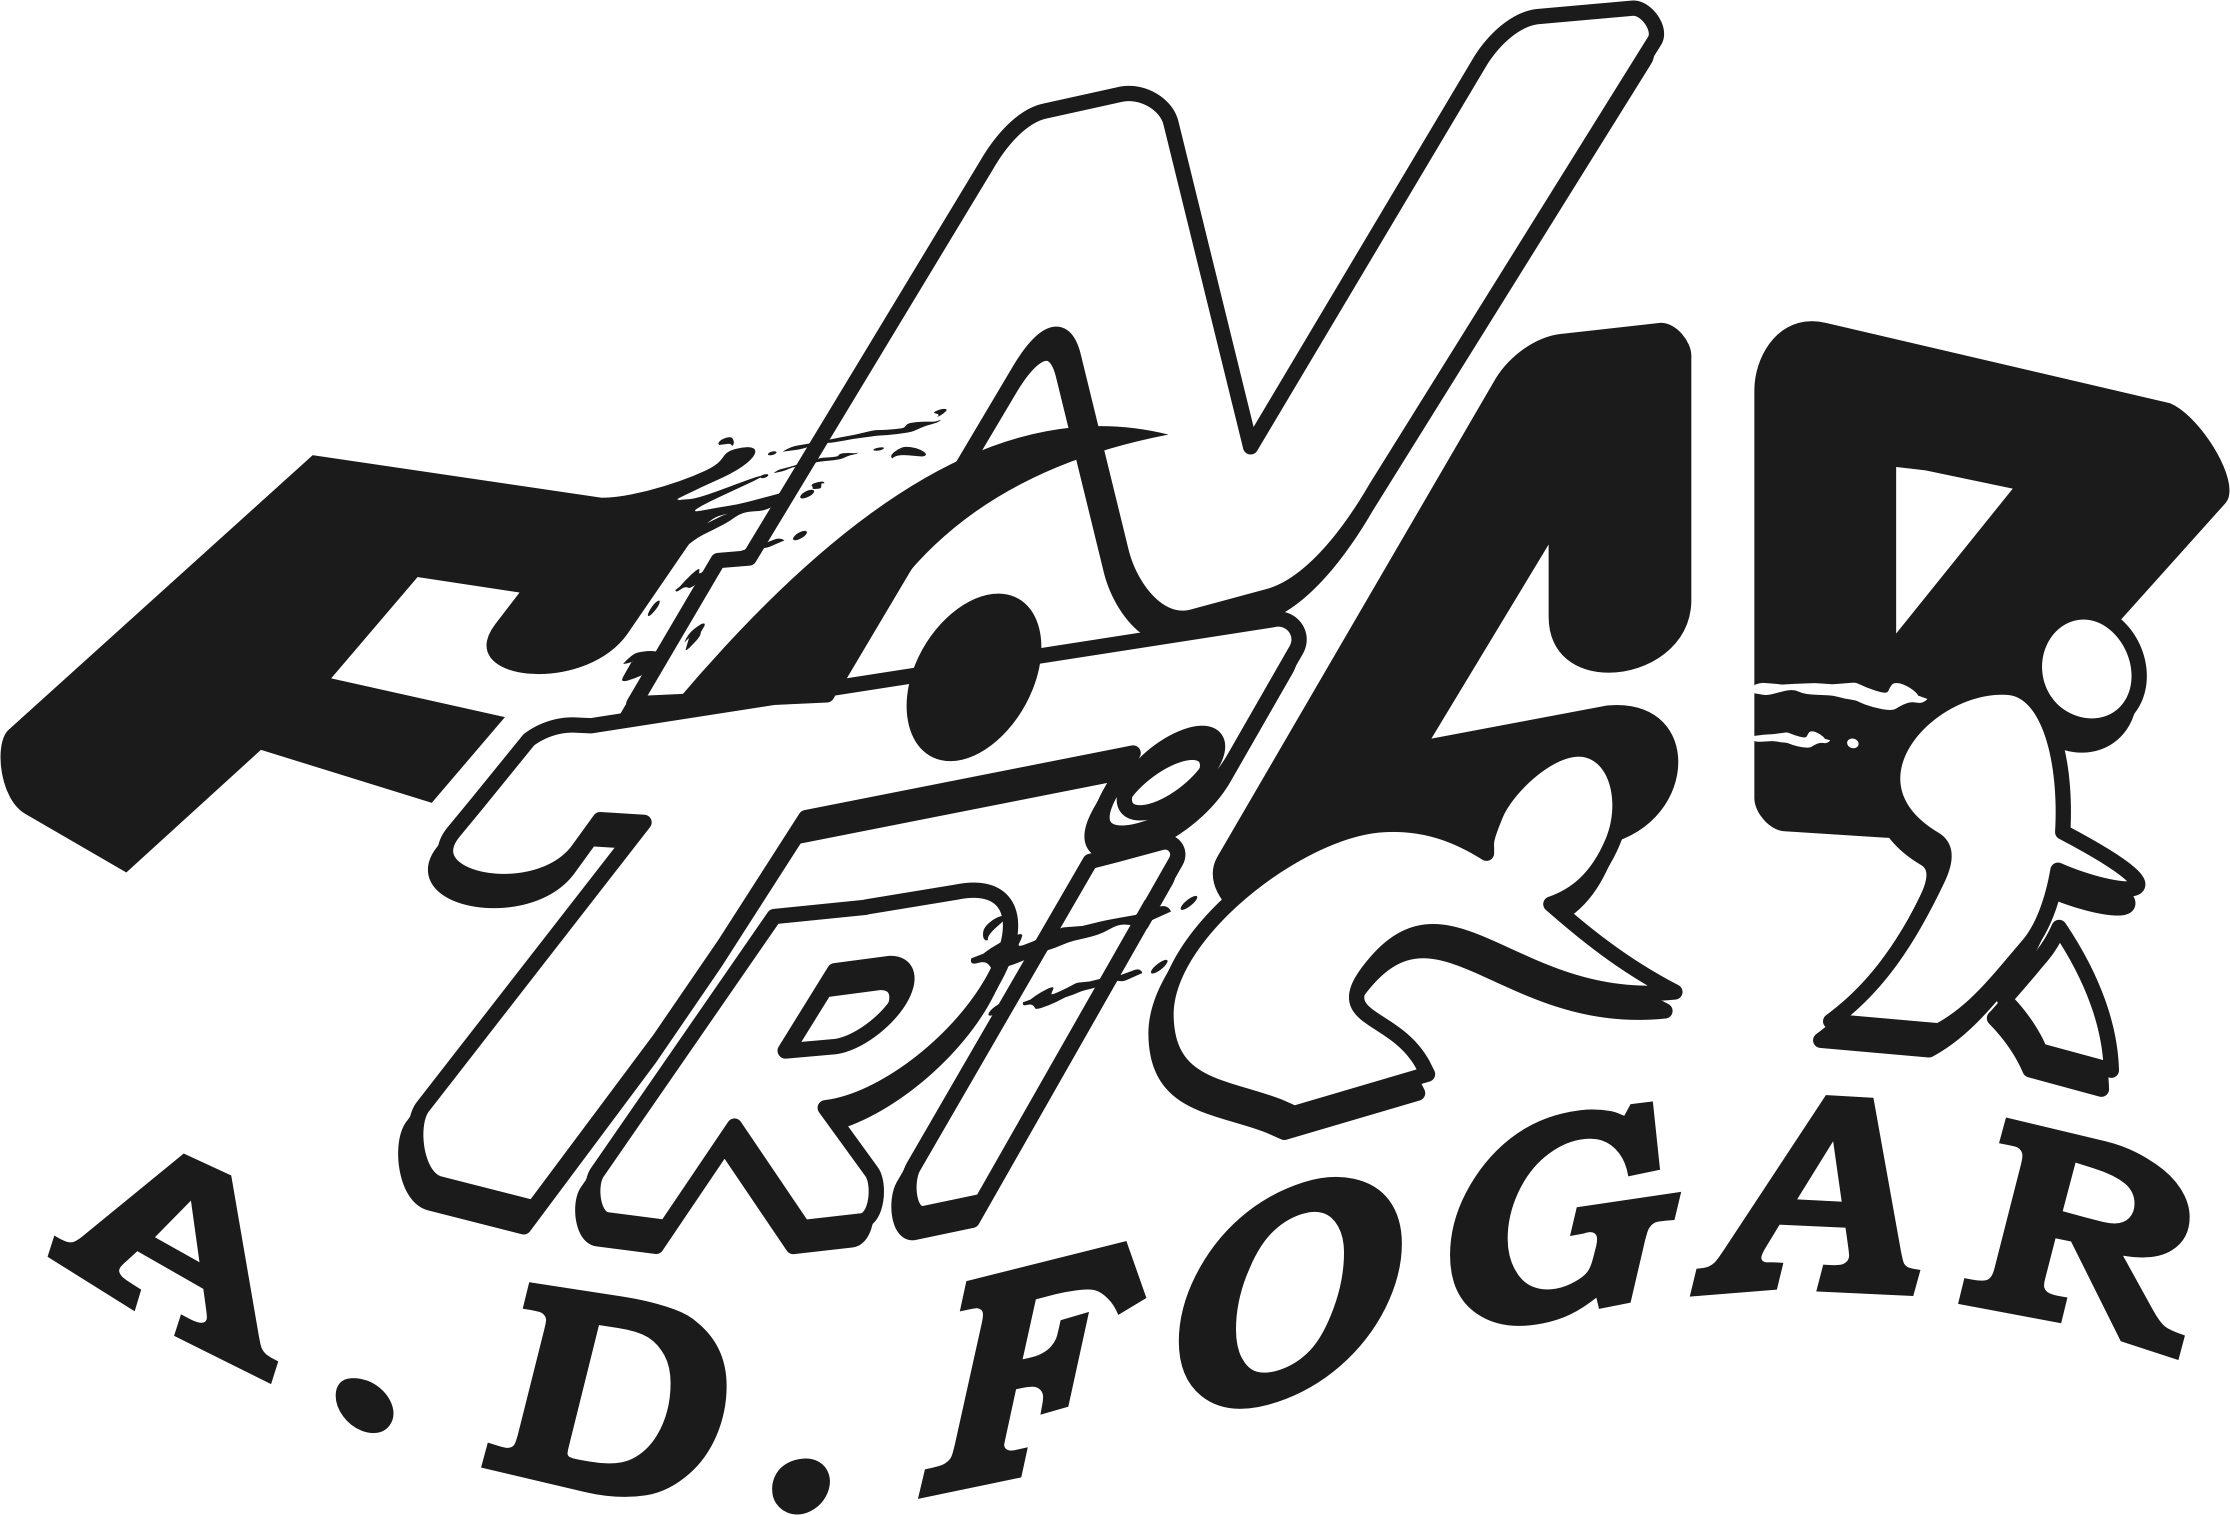 La A.D.Fogar inicia la campaña 2009-10 la próxima semana